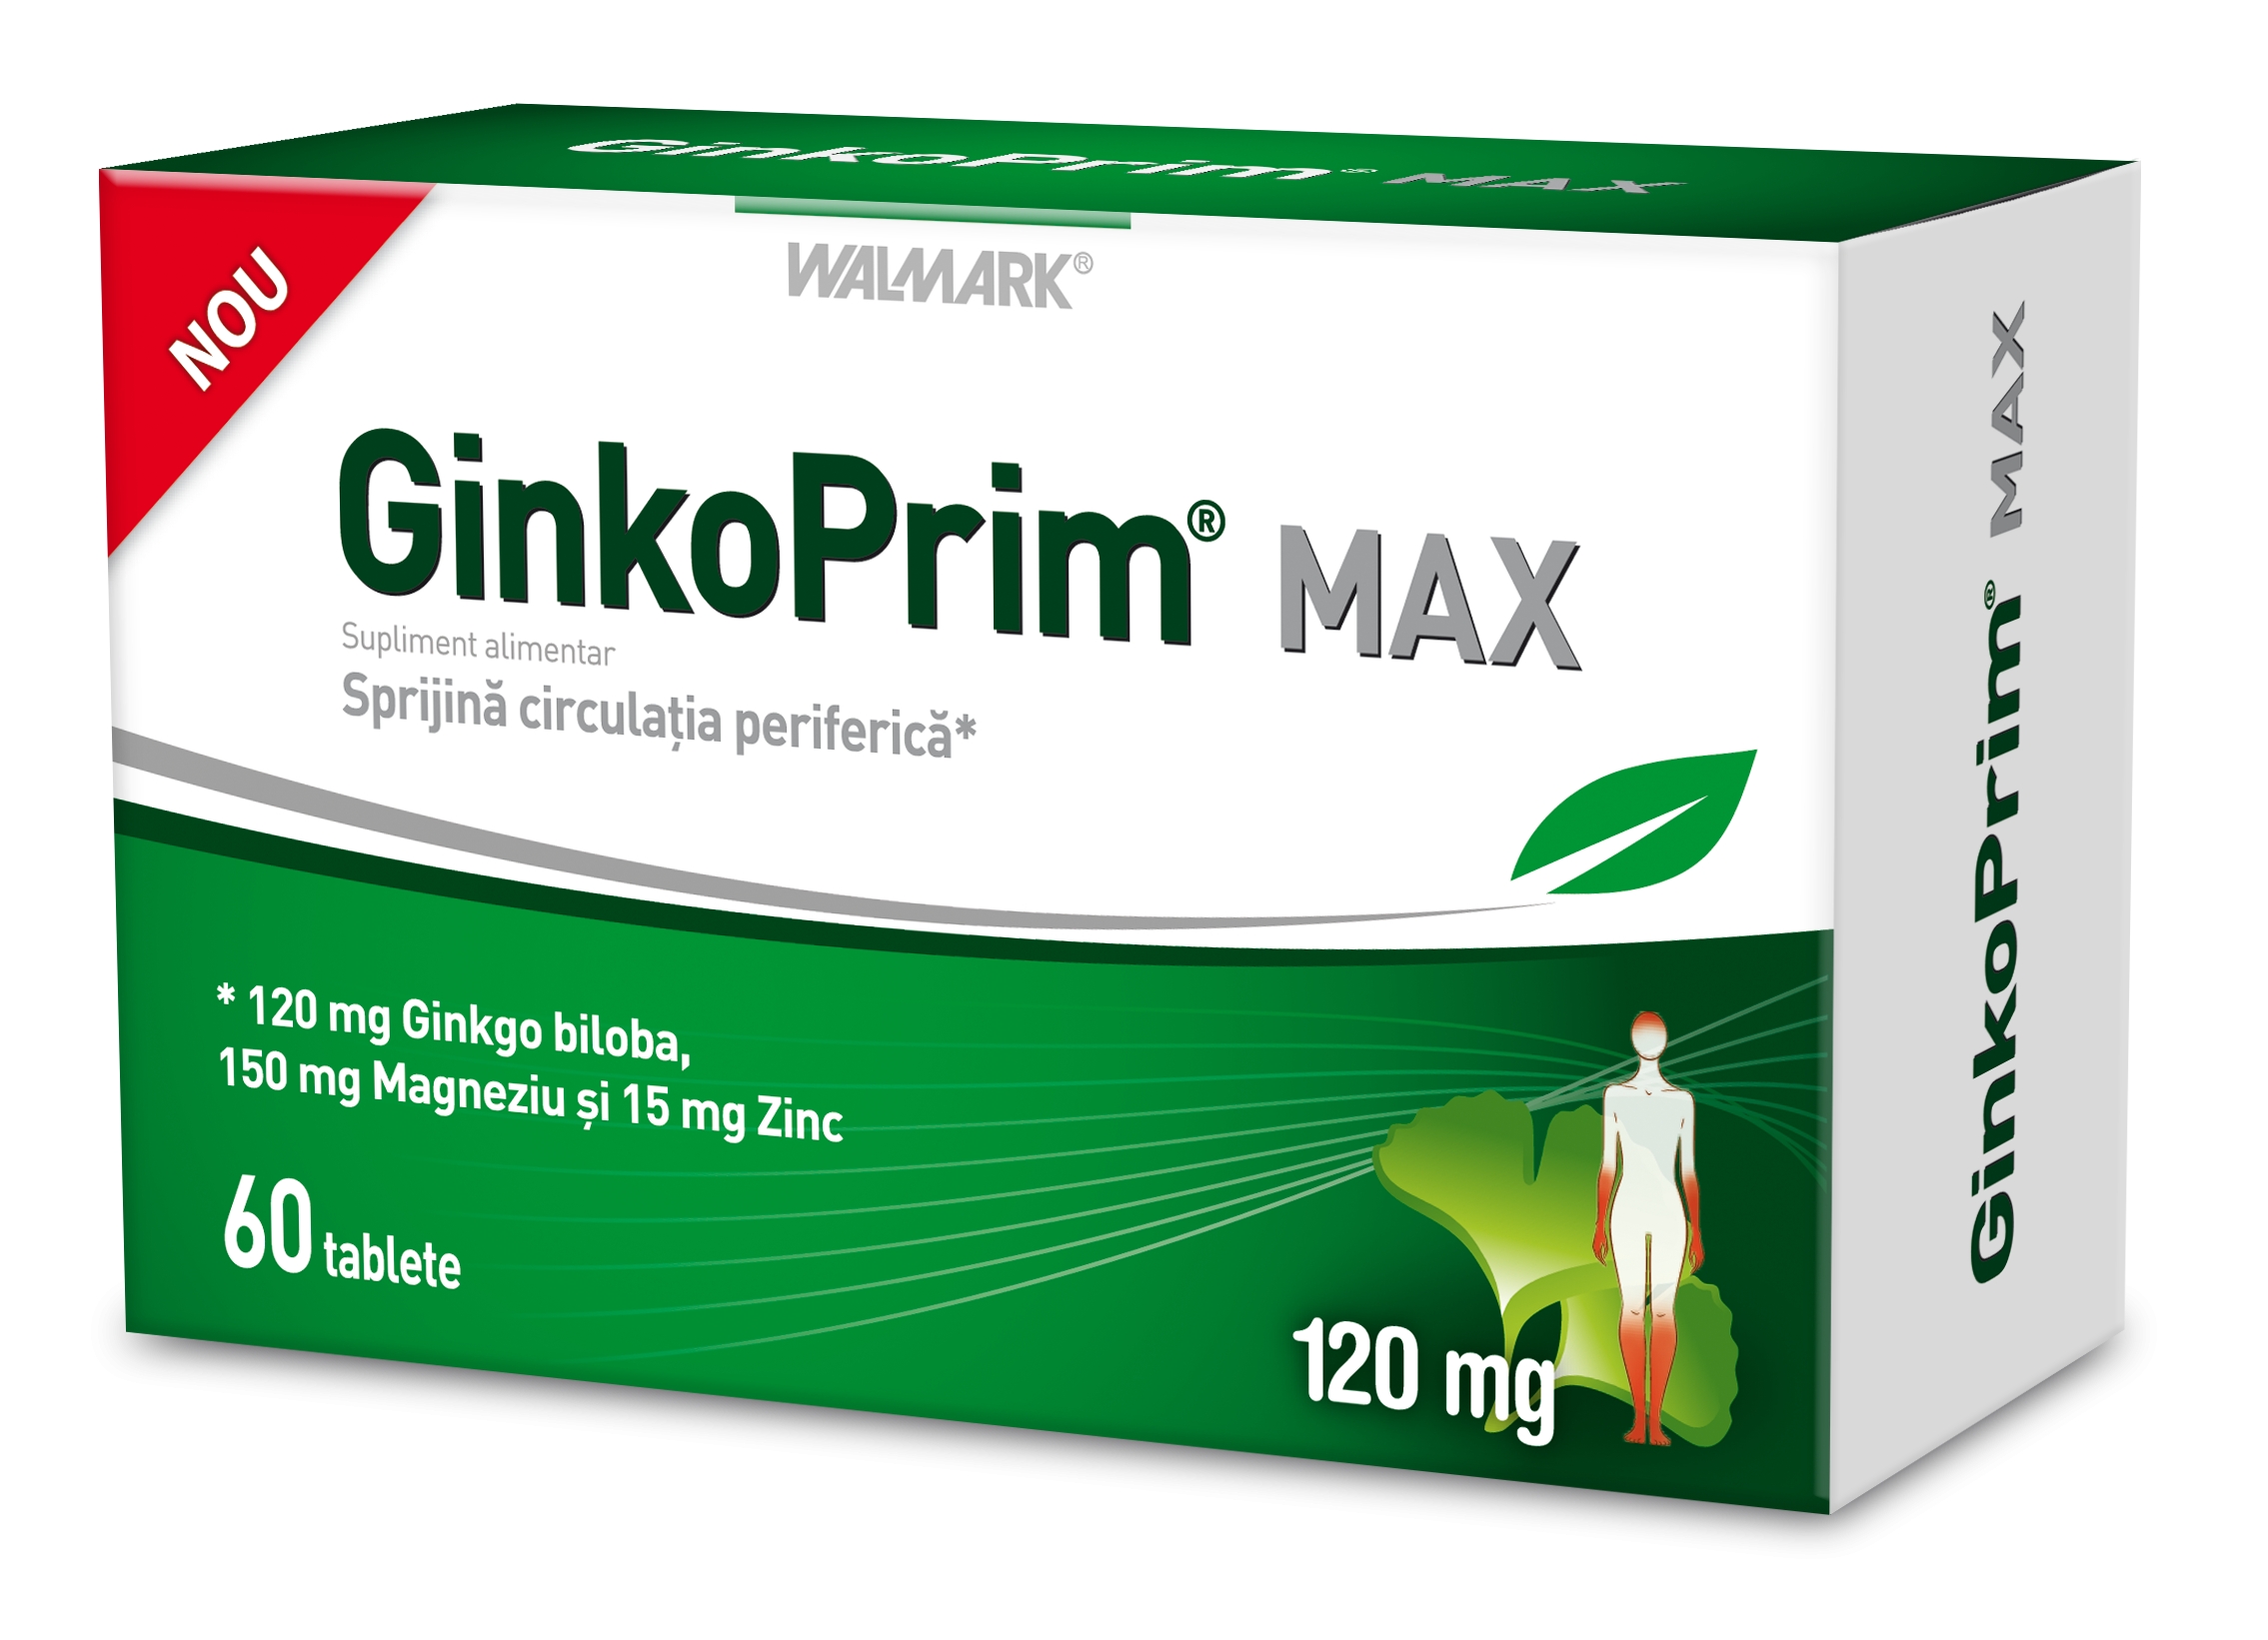 Walmark GinkoPrim Max 120mg 60 tablete